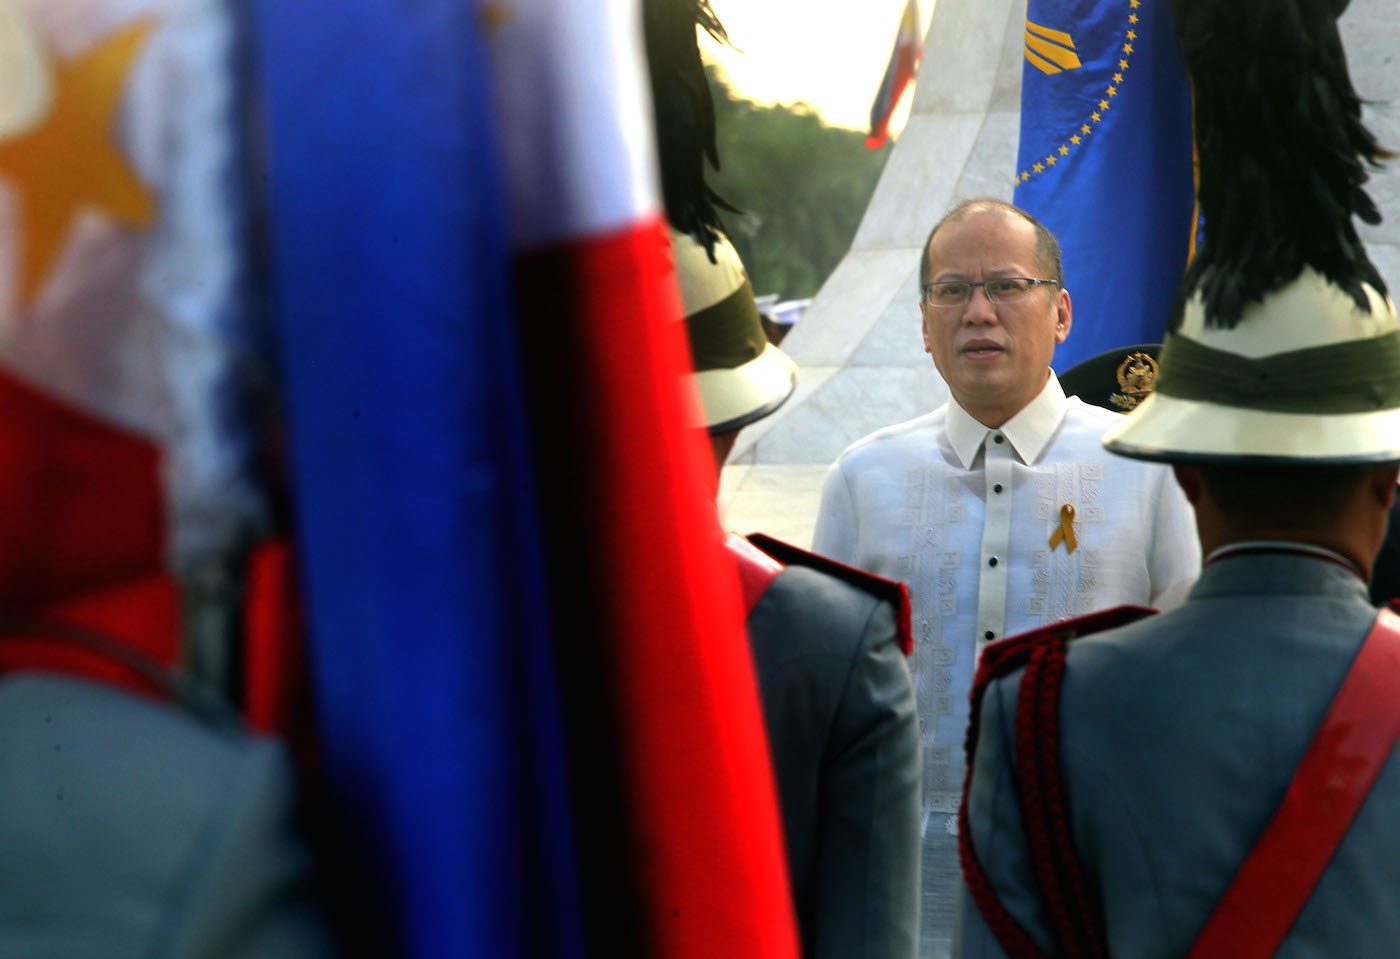 Are you still alive? The rhetoric of Benigno Aquino III